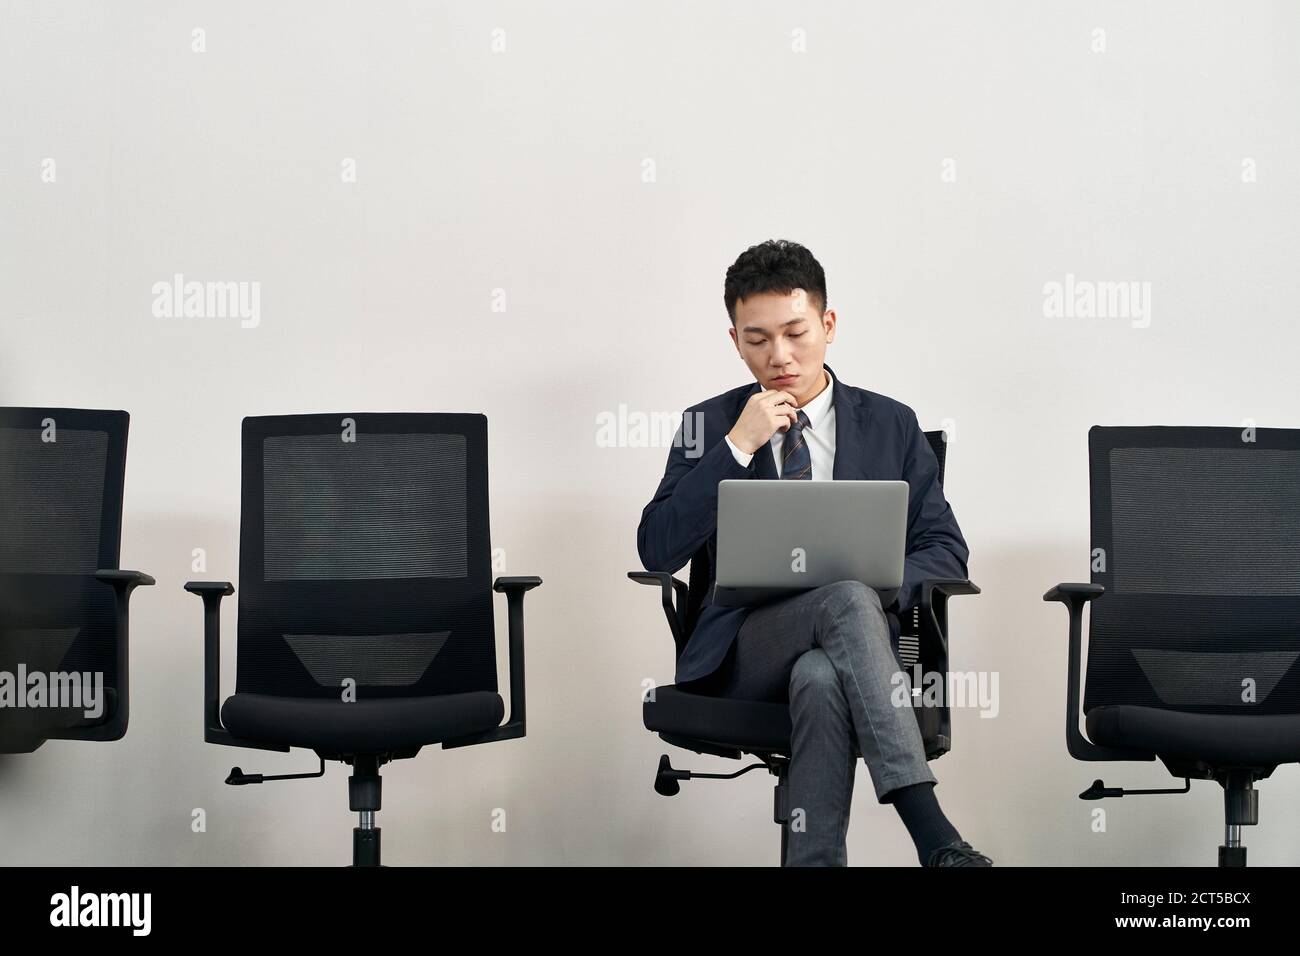 Junge asiatische Arbeitssuchende sitzen im Stuhl Vorbereitung für Interview Mit Laptop-Computer während der Wartezeit in der Schlange Stockfoto